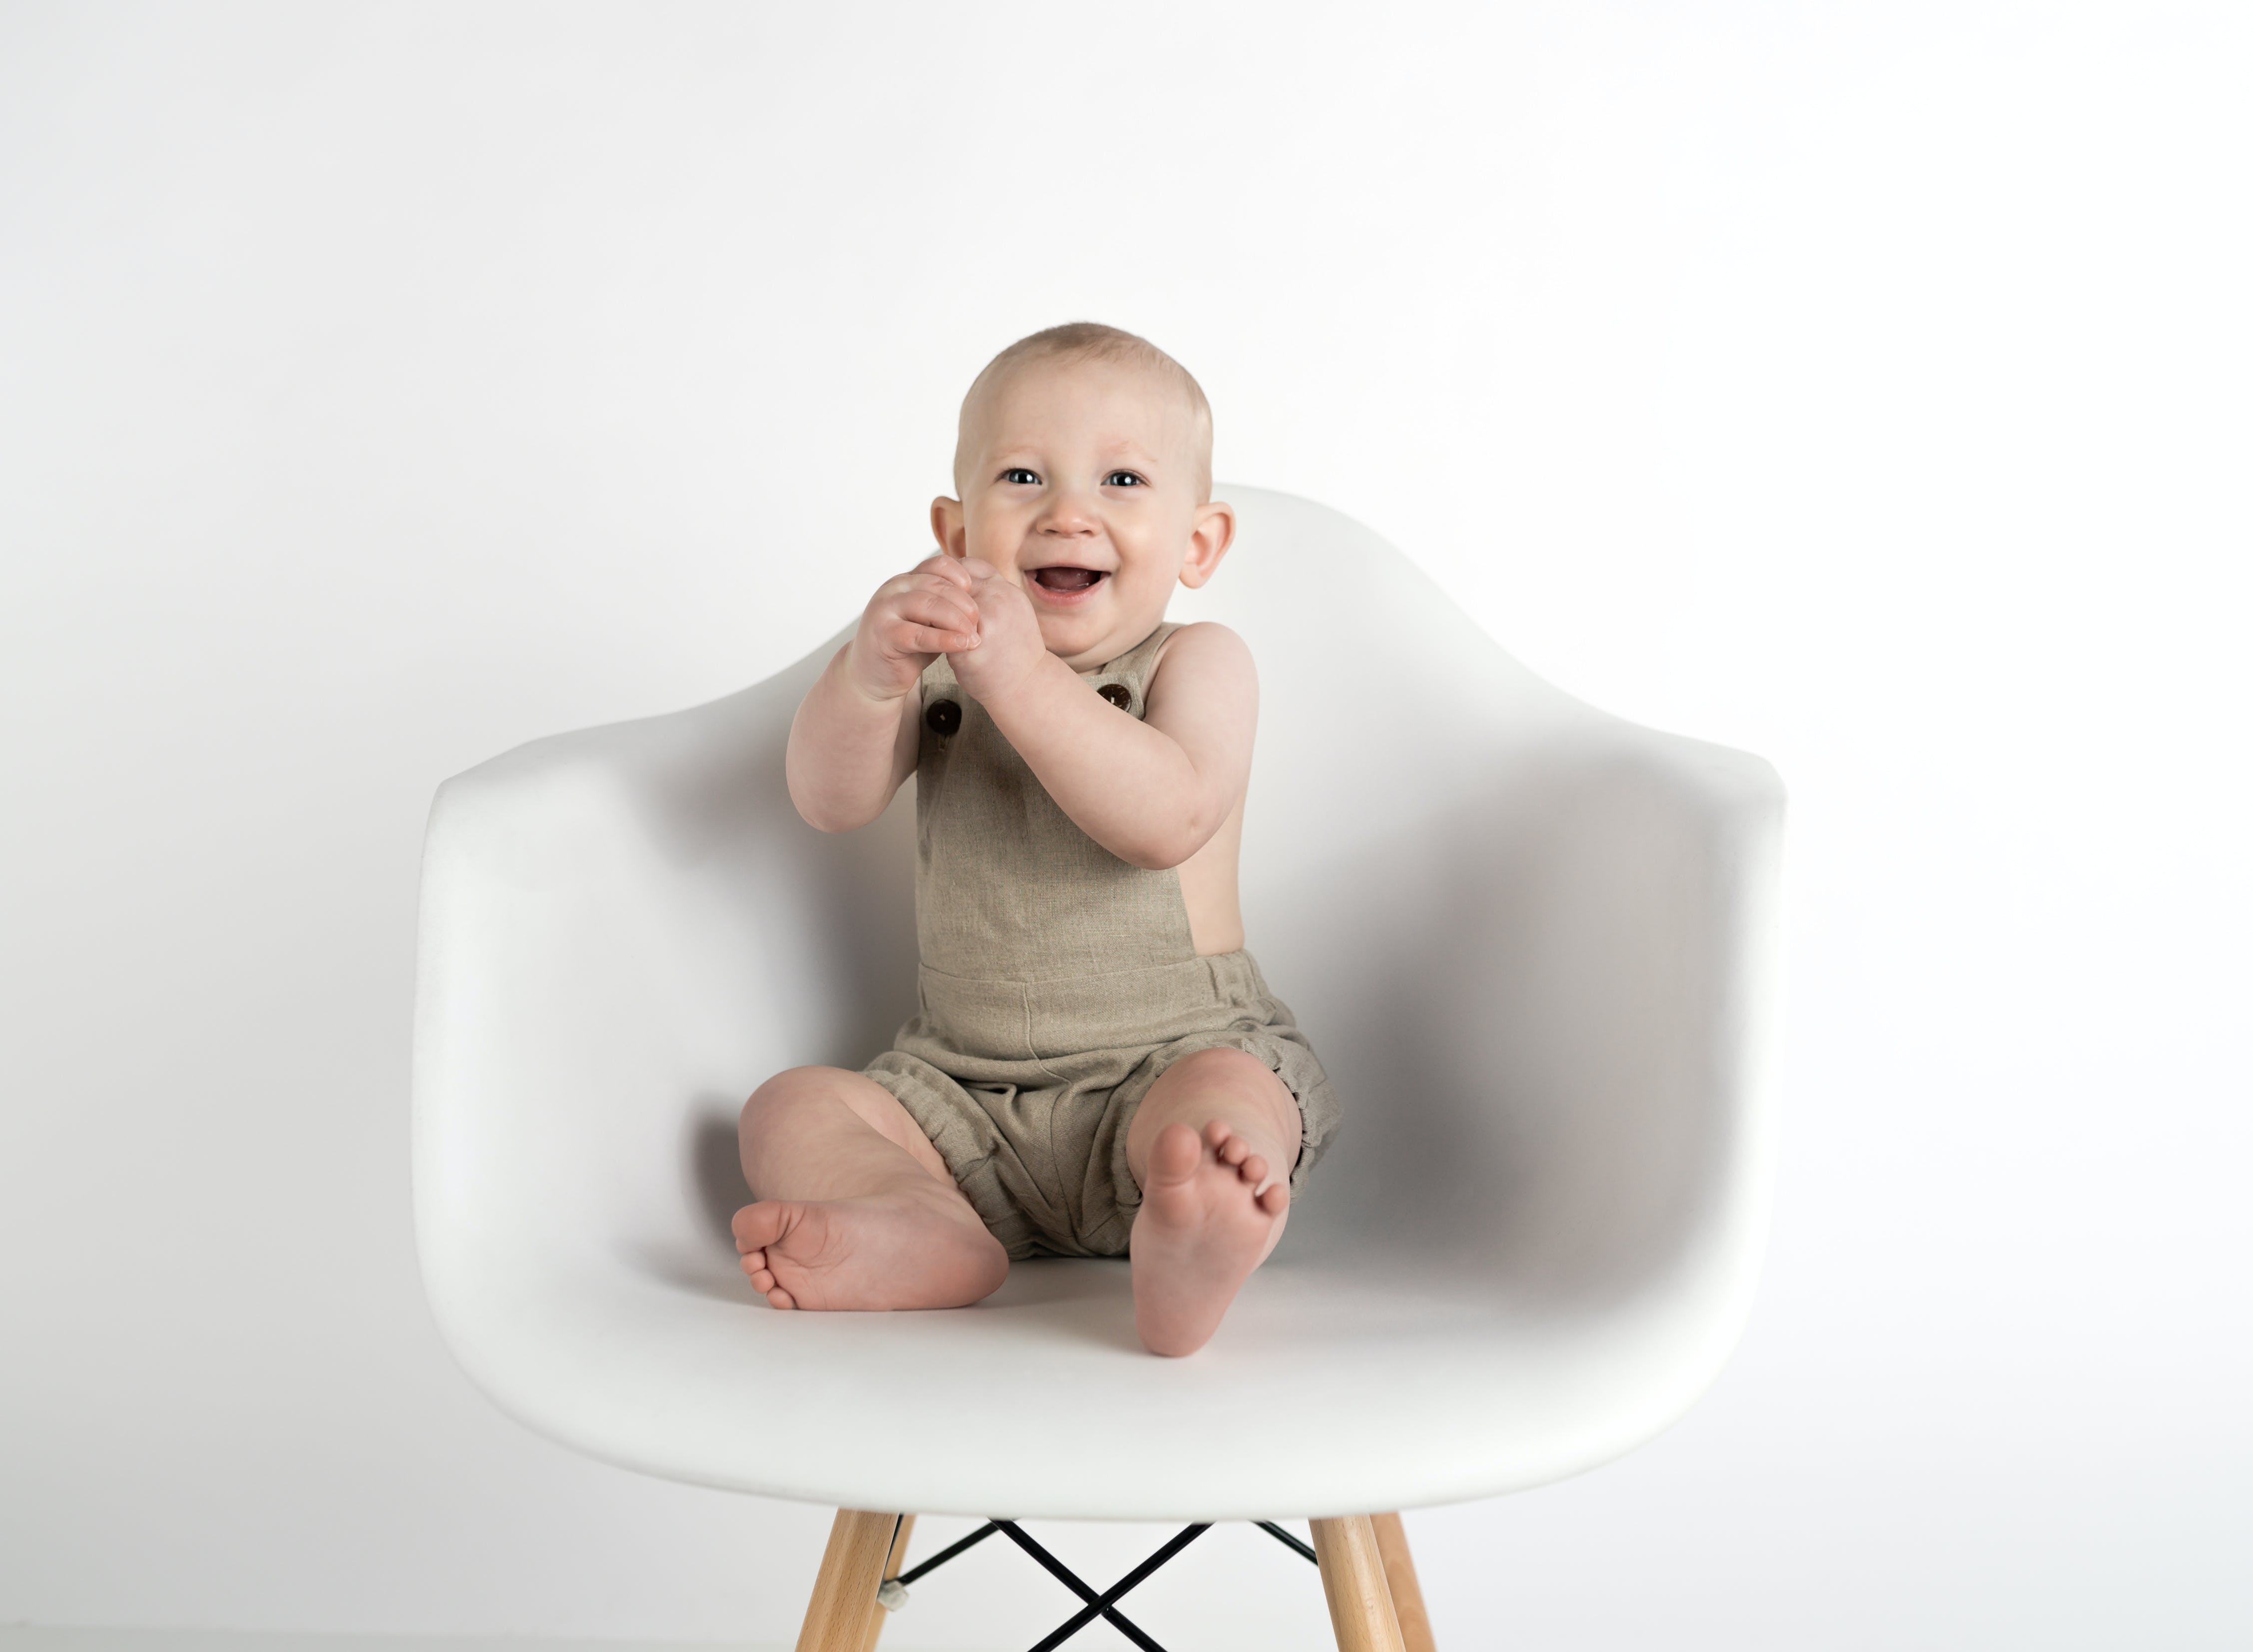 Ein lachendes Baby, das auf einem Stuhl sitzt | Quelle: Pexels